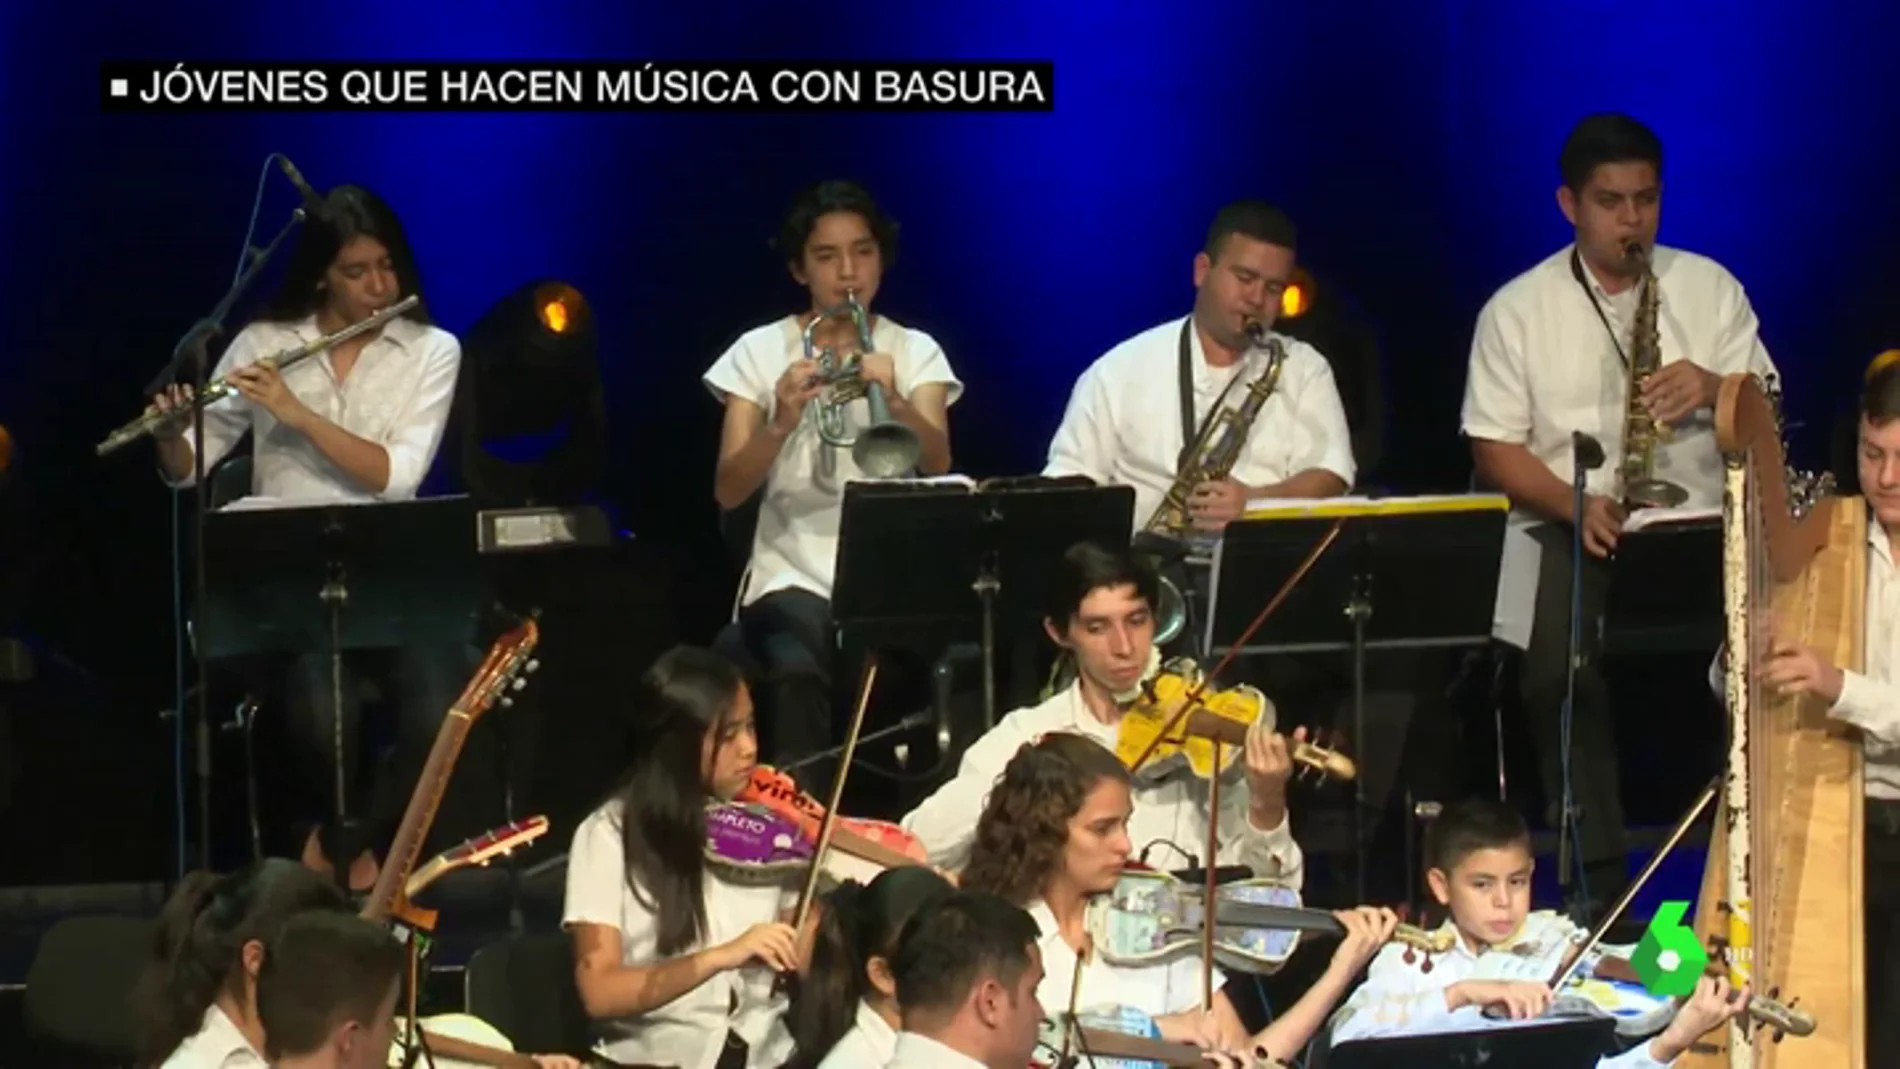 Jóvenes realizan un concierto en el Teatro Real con basura reciclada